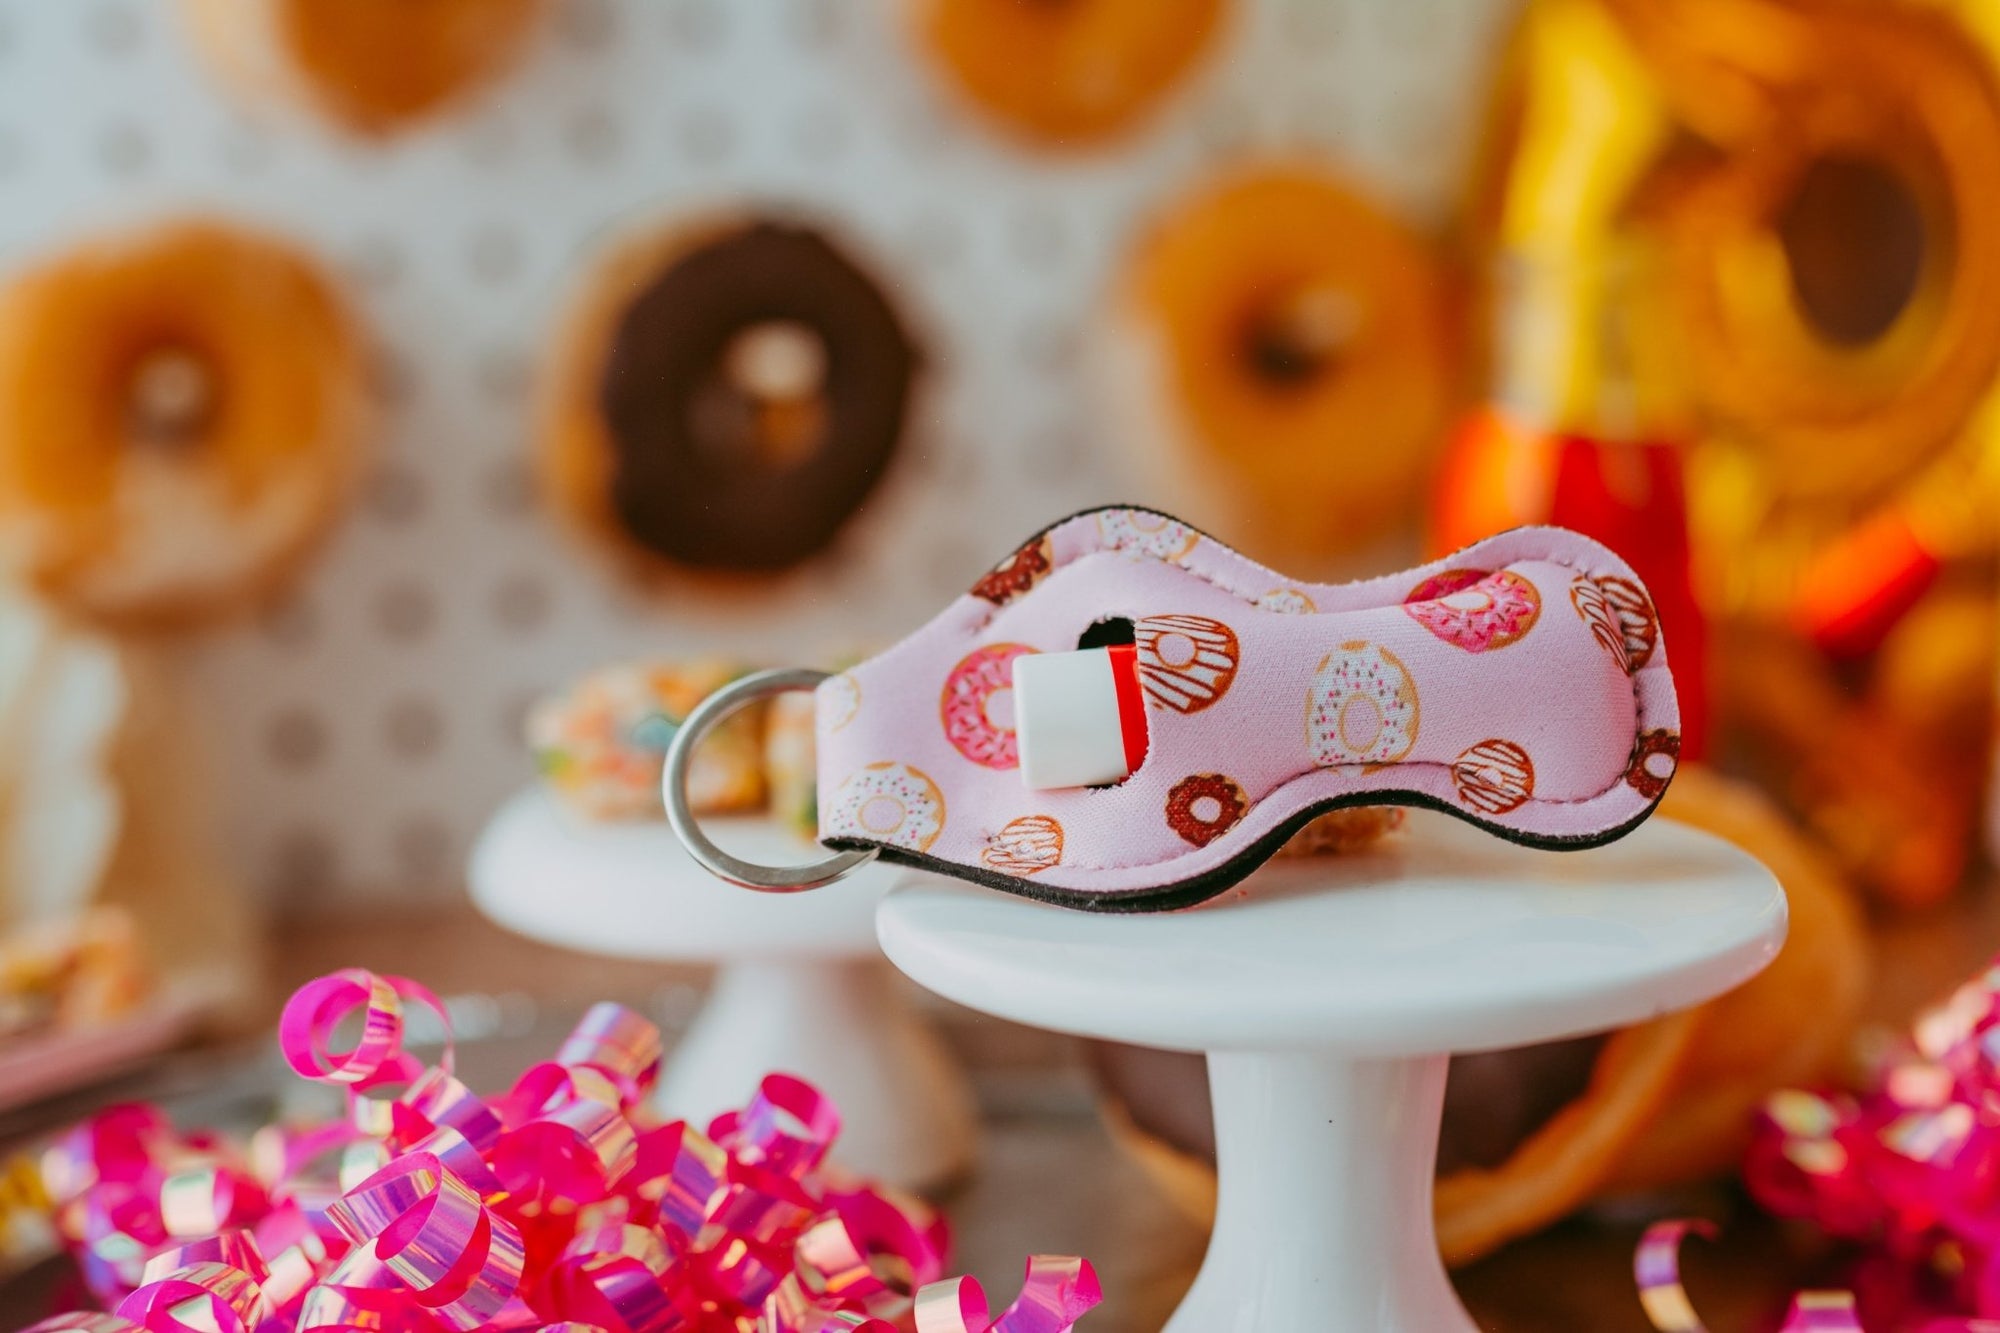 Donut Theme Birthday Party Planning Ideas | Daisy Lane Company